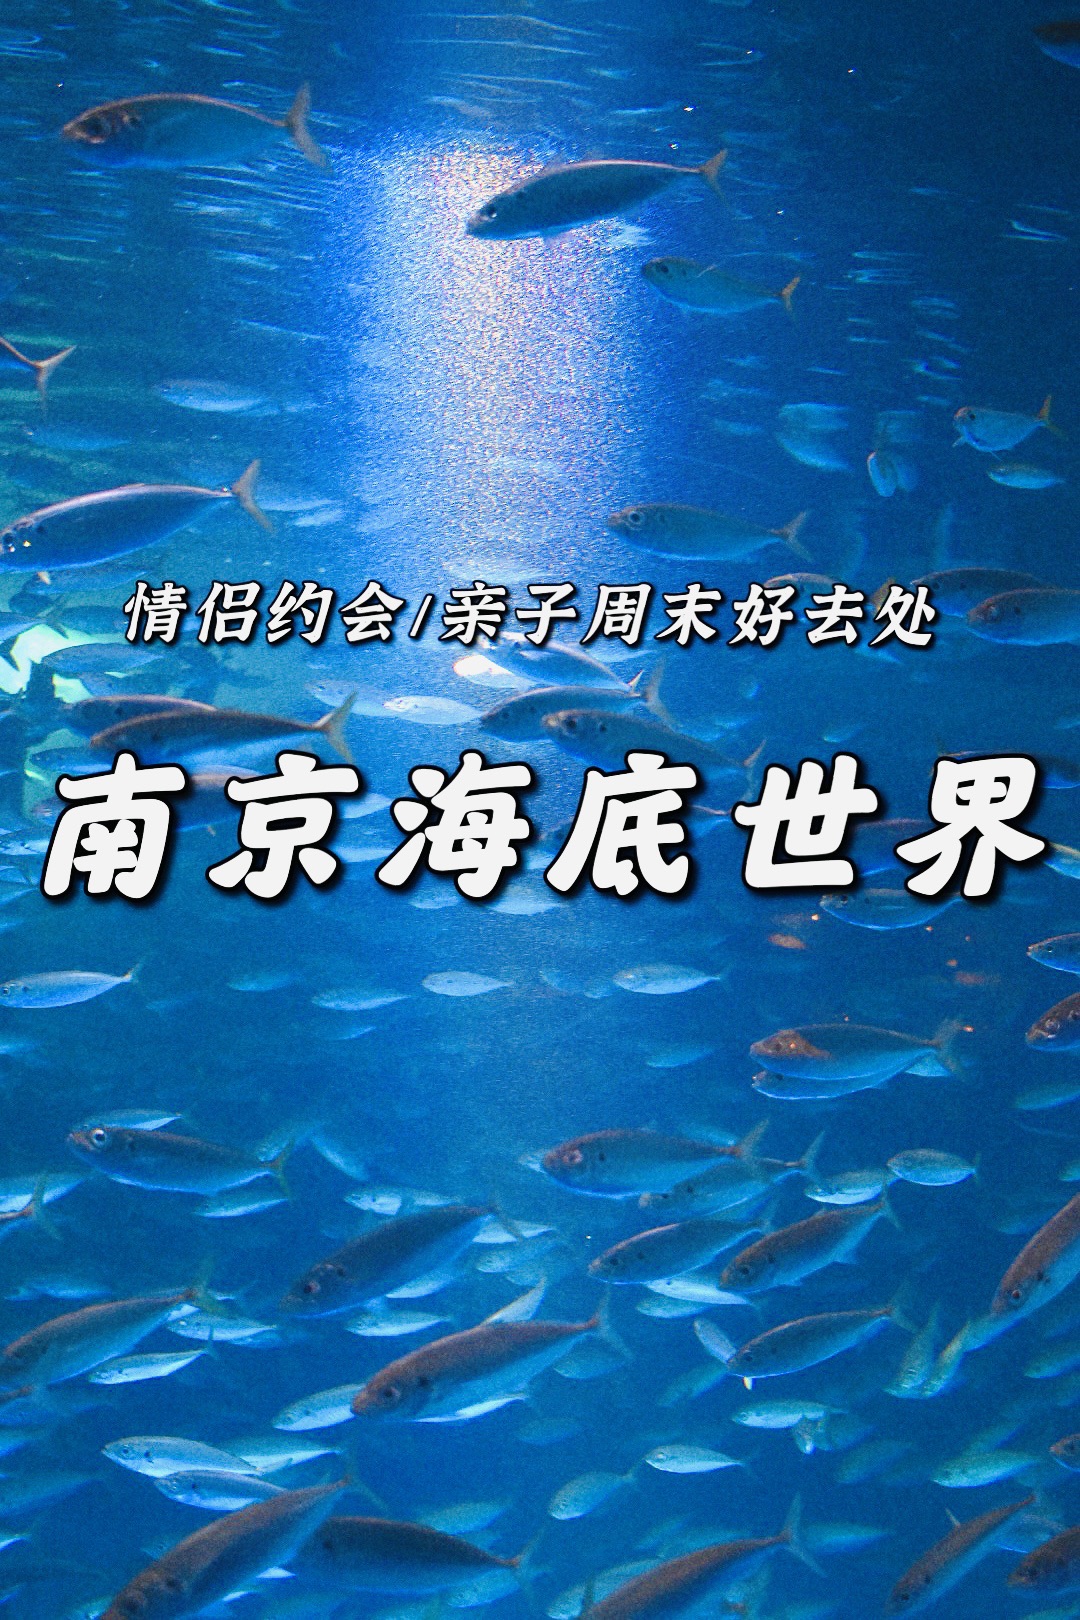 南京周末好去处南京海底世界